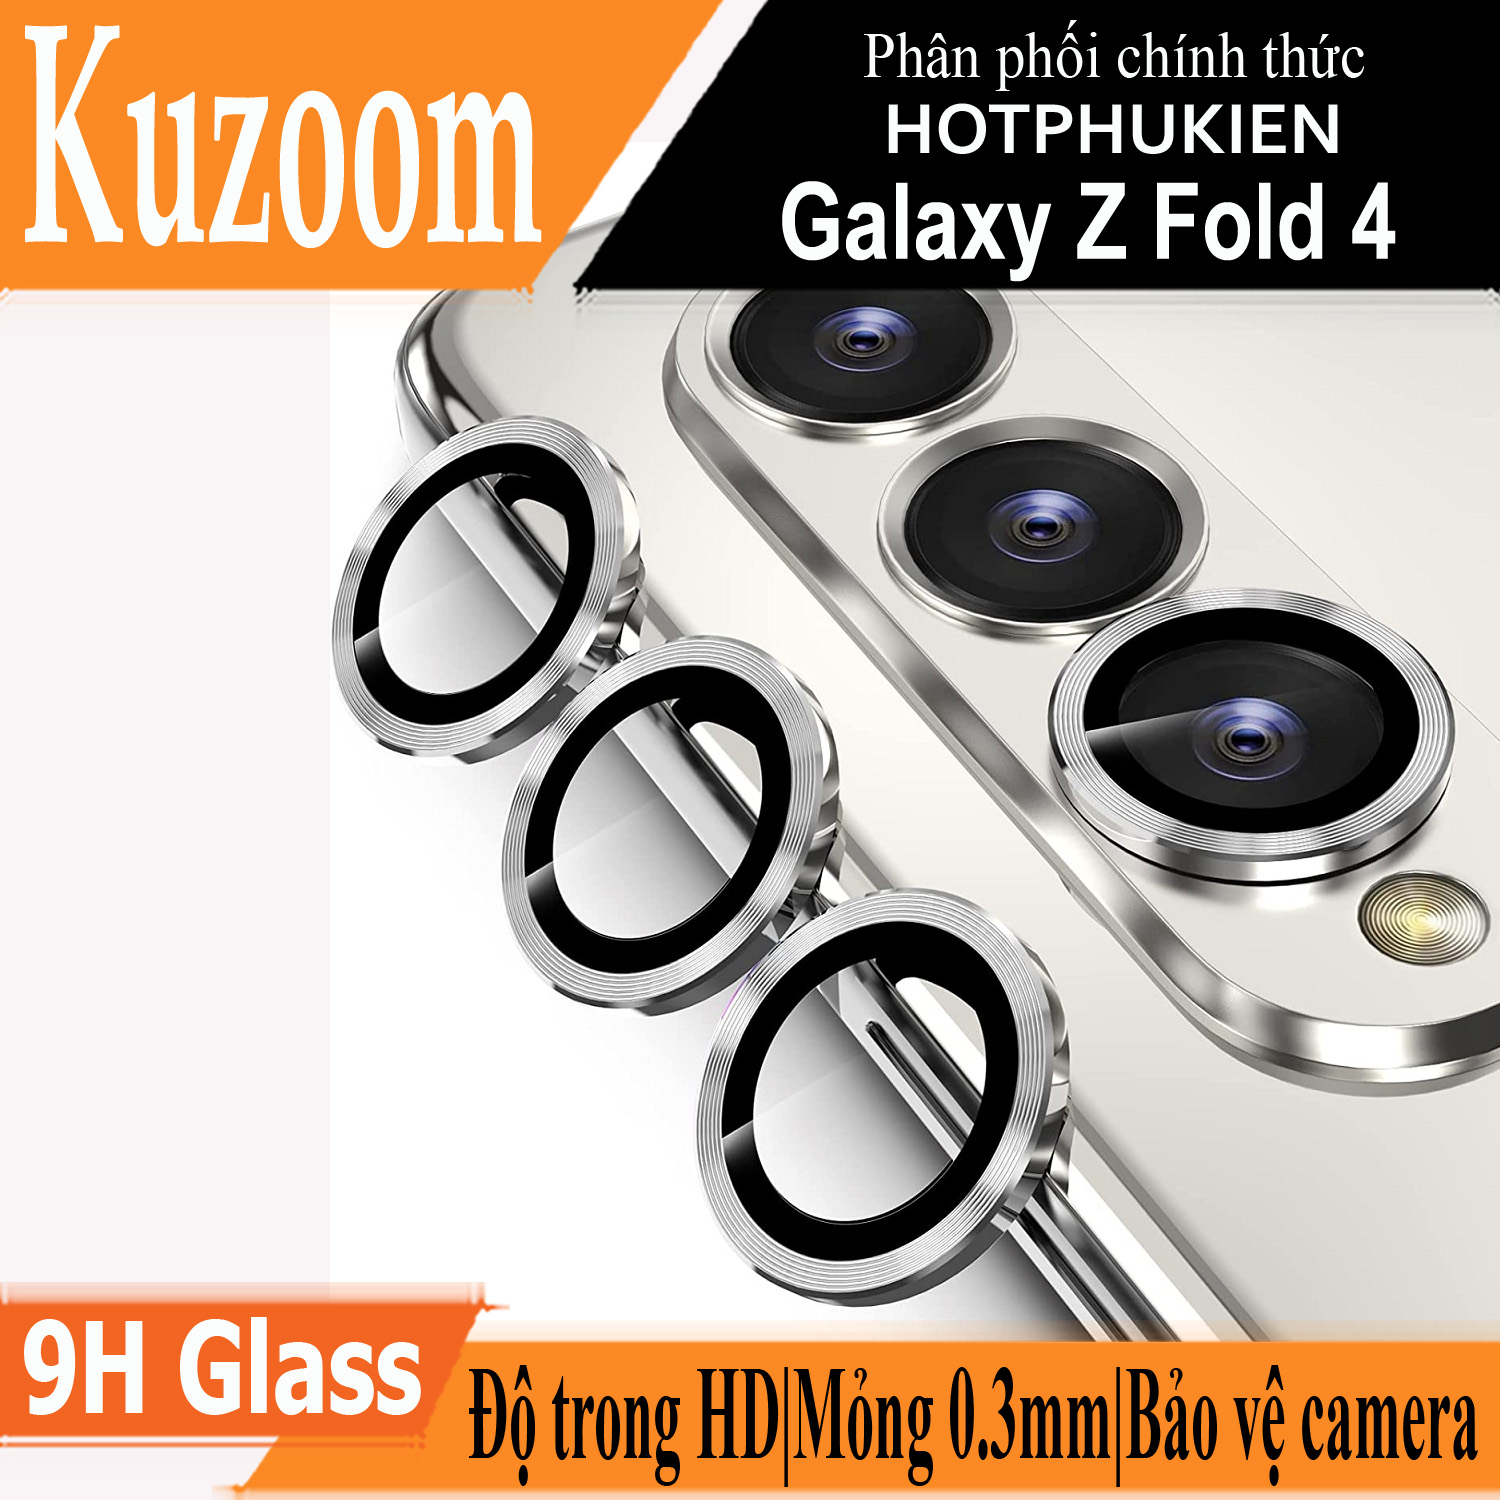 Bộ miếng dán kính cường lực bảo vệ Camera cho Samsung Galaxy Z Fold 4 hiệu HOTCASE Kuzoom Protective Lens